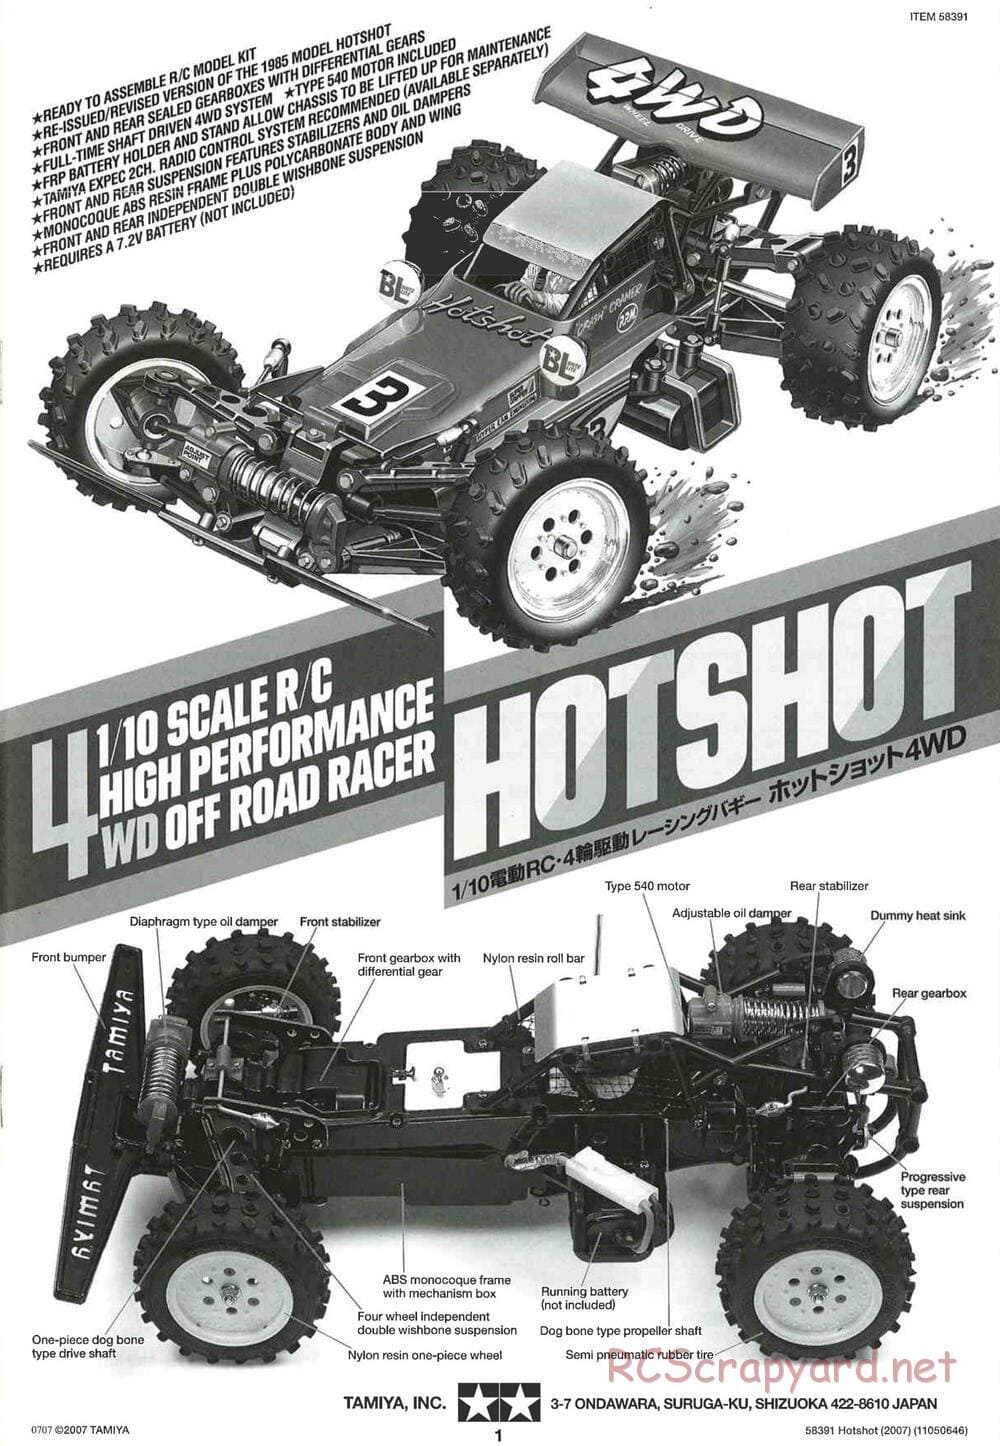 Tamiya - Hotshot - 2007 - HS Chassis - Manual - Page 1